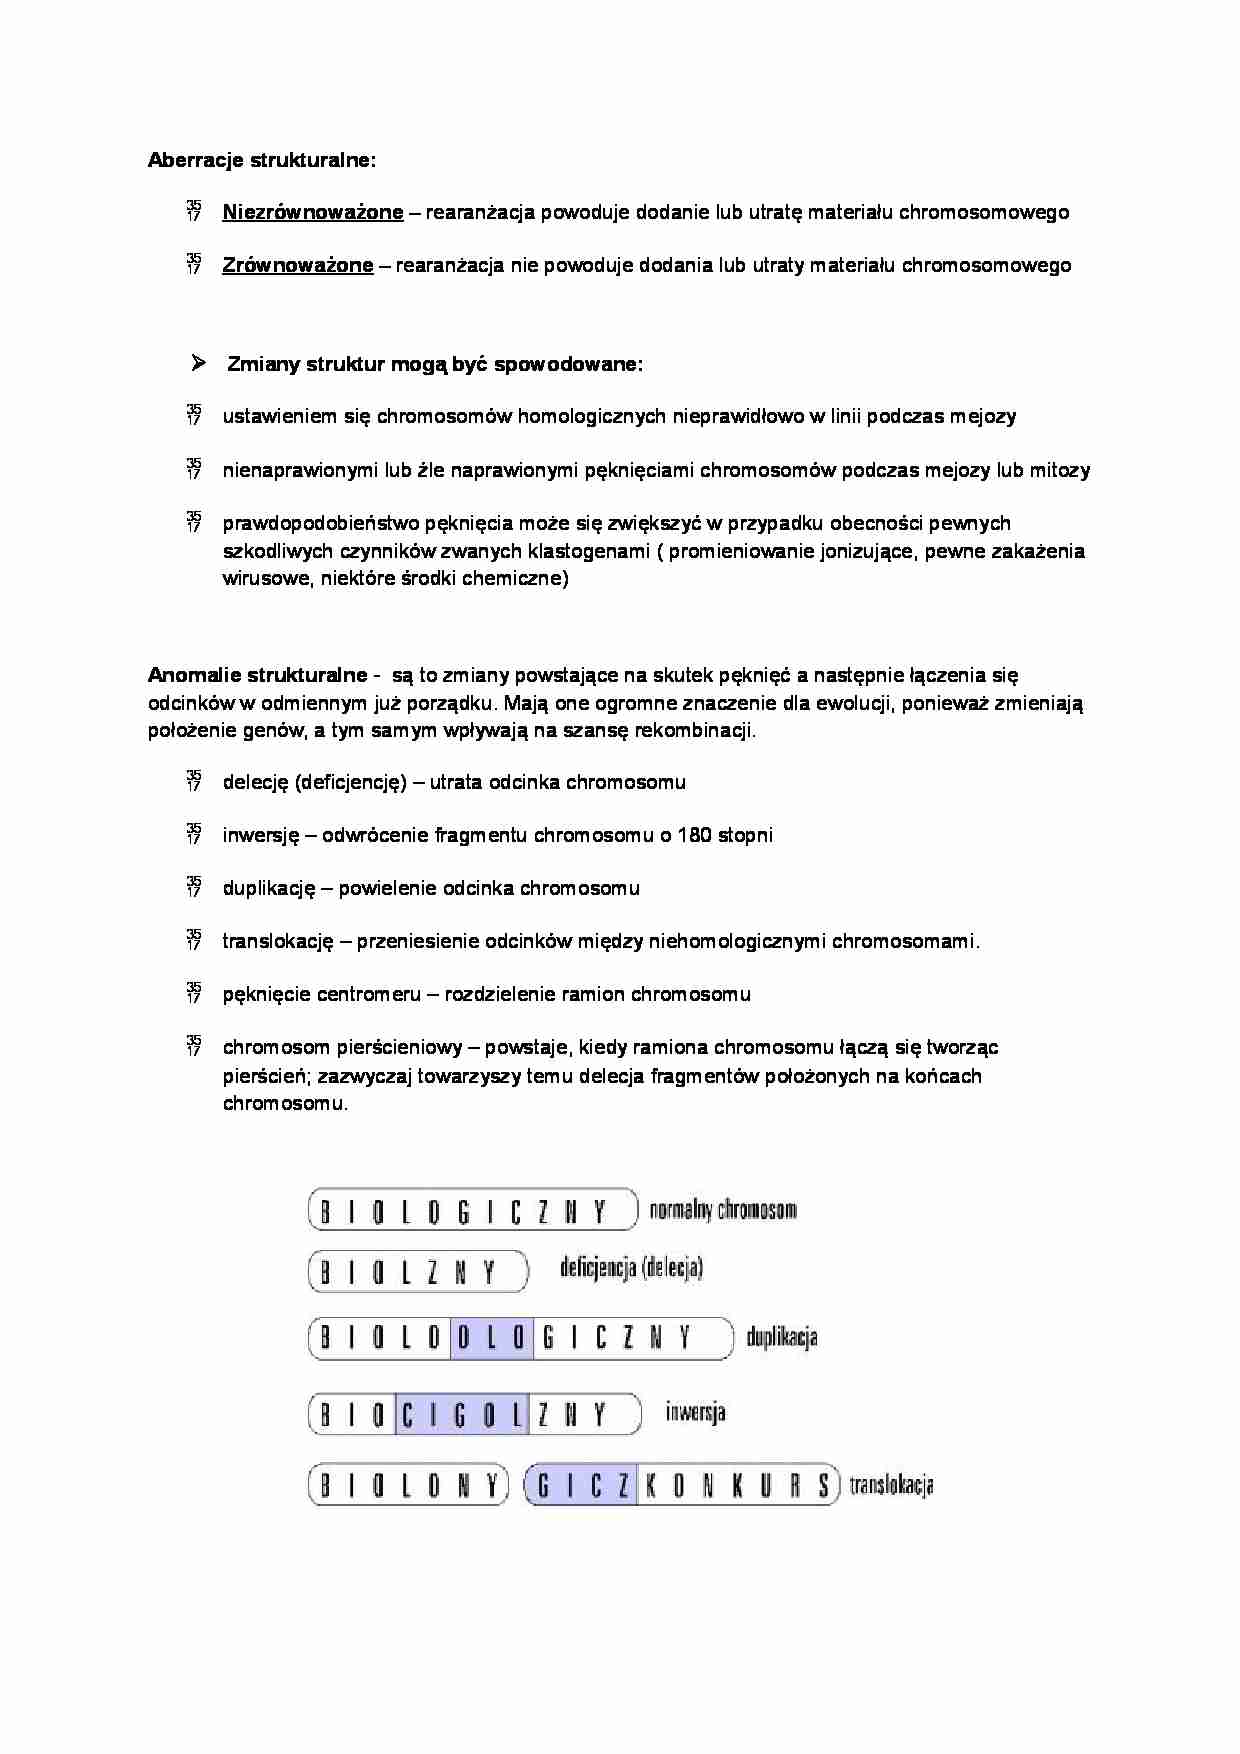 Referat o aberacjach chromosomowych - strona 1